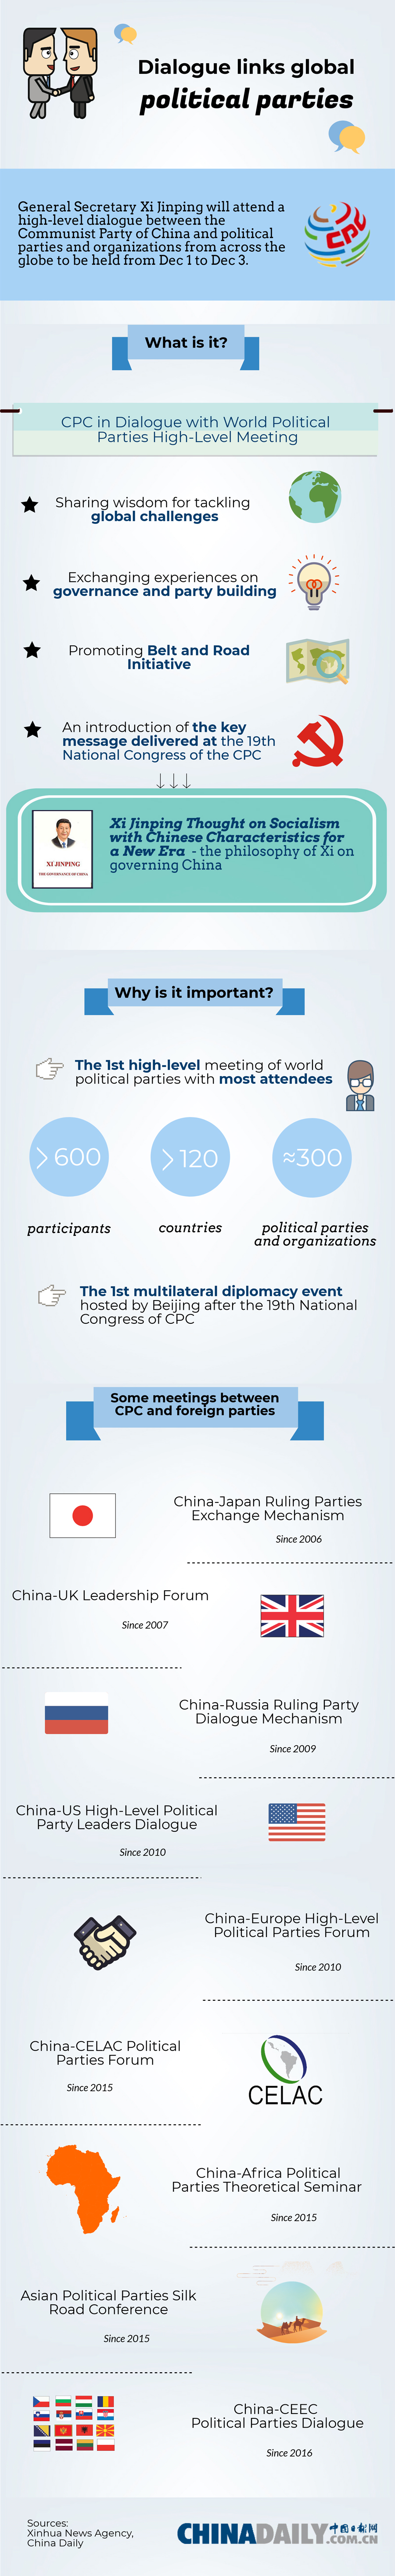 Dialogue links global political parties